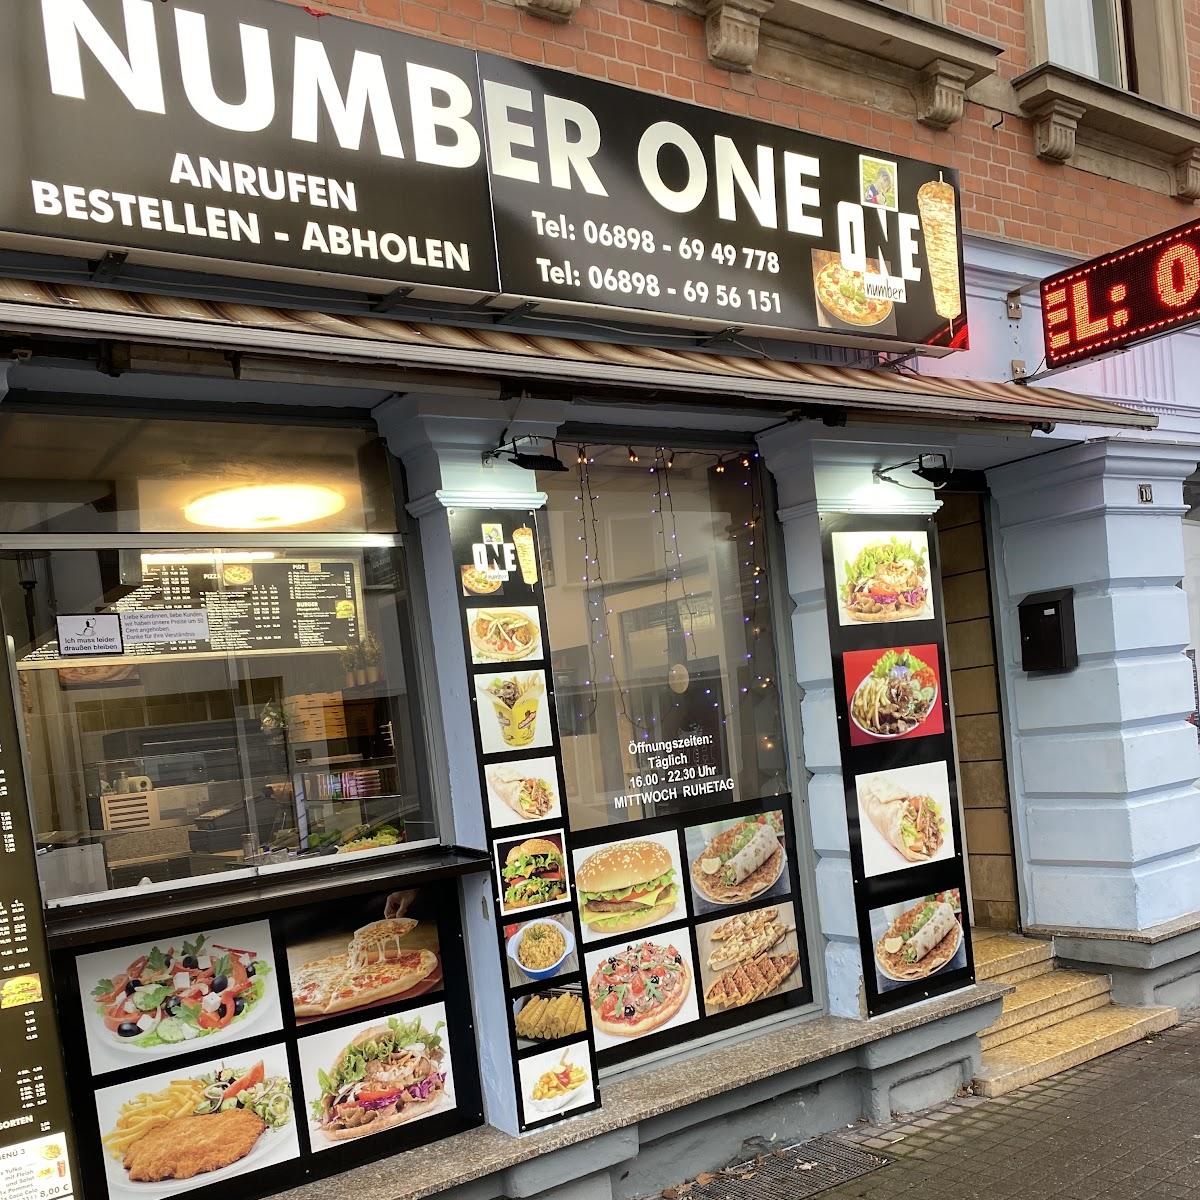 Restaurant "Number one" in Püttlingen